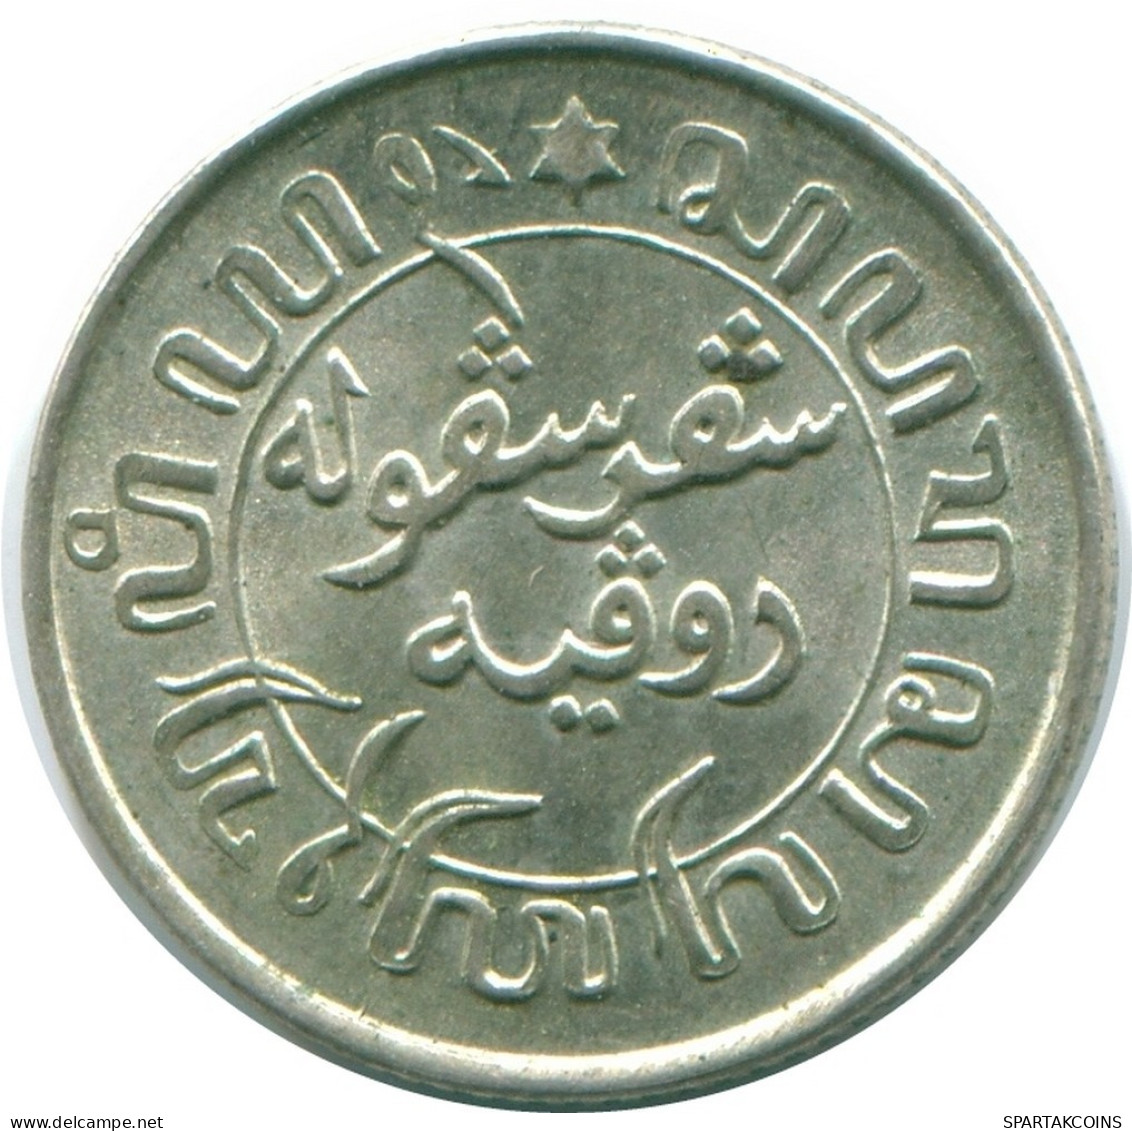 1/10 GULDEN 1942 NETHERLANDS EAST INDIES SILVER Colonial Coin #NL13931.3.U.A - Niederländisch-Indien